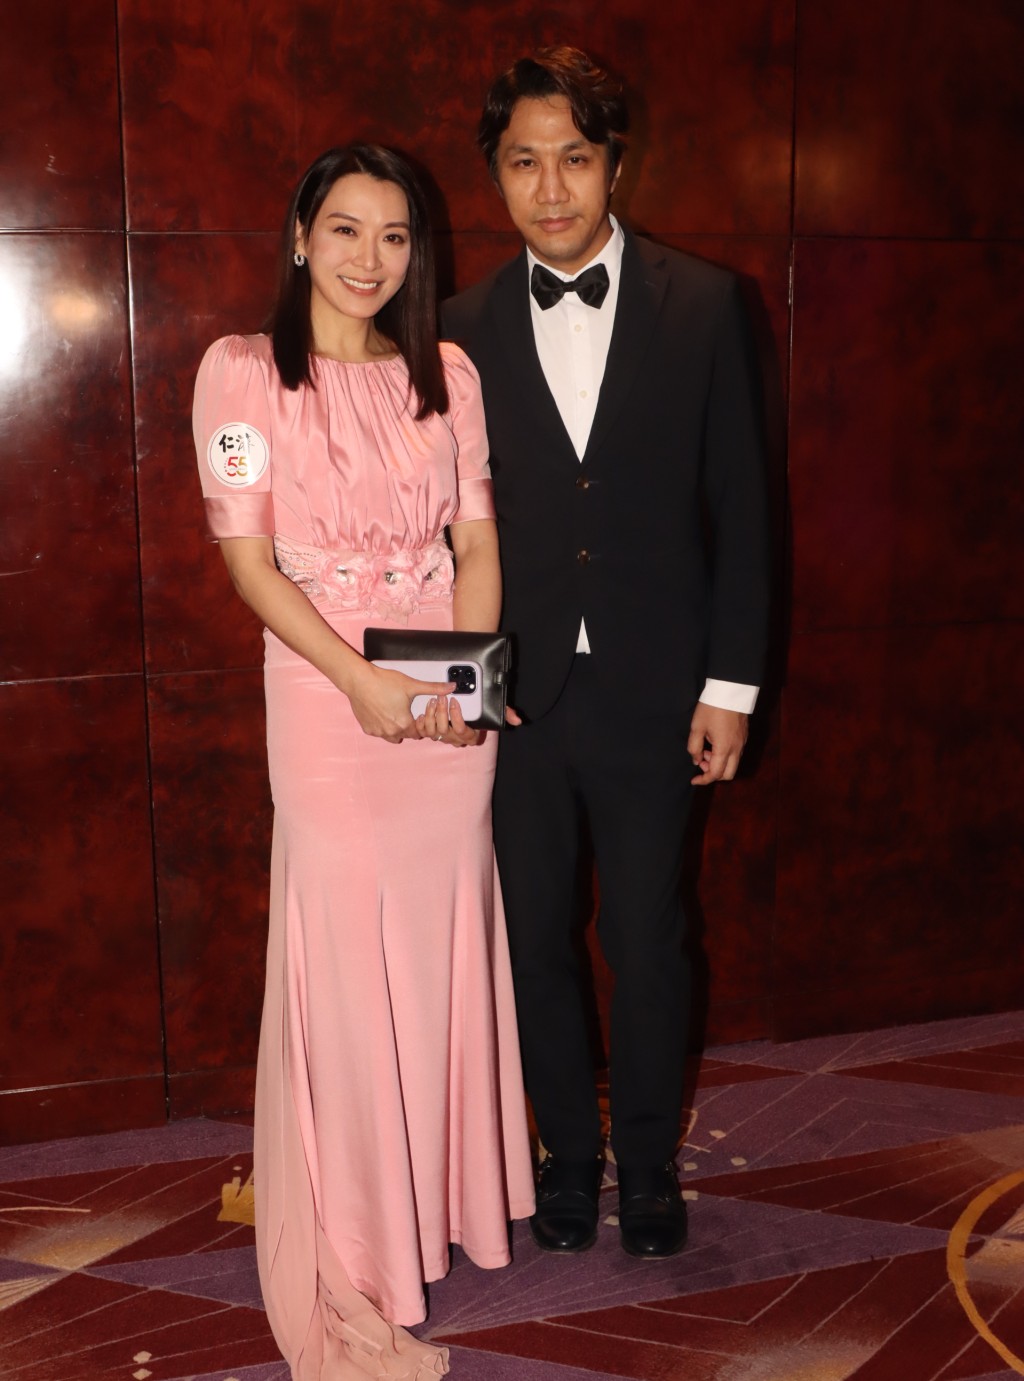 陳煒穿上粉紅色晚裝裙與老公一同出席舞會。